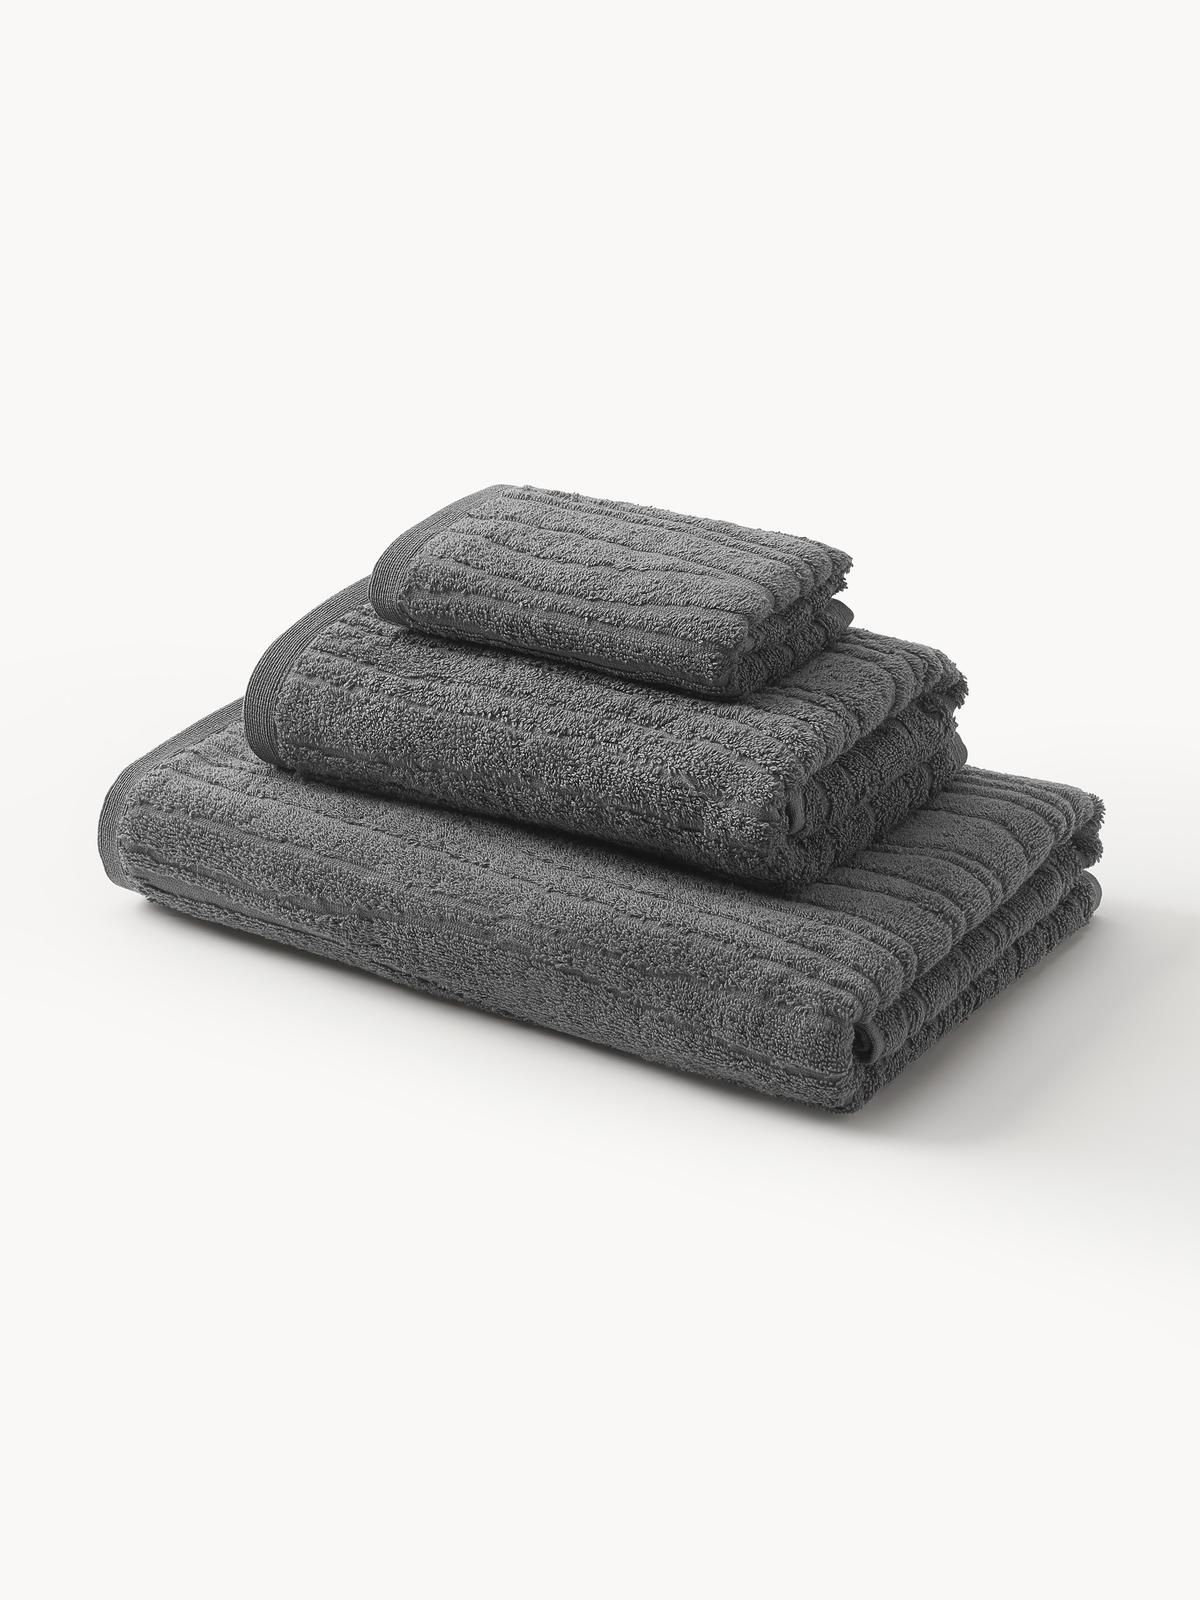 Handtuch-Set Audrina aus Baumwolle, in verschiedenen Setgrößen von Westwing Collection